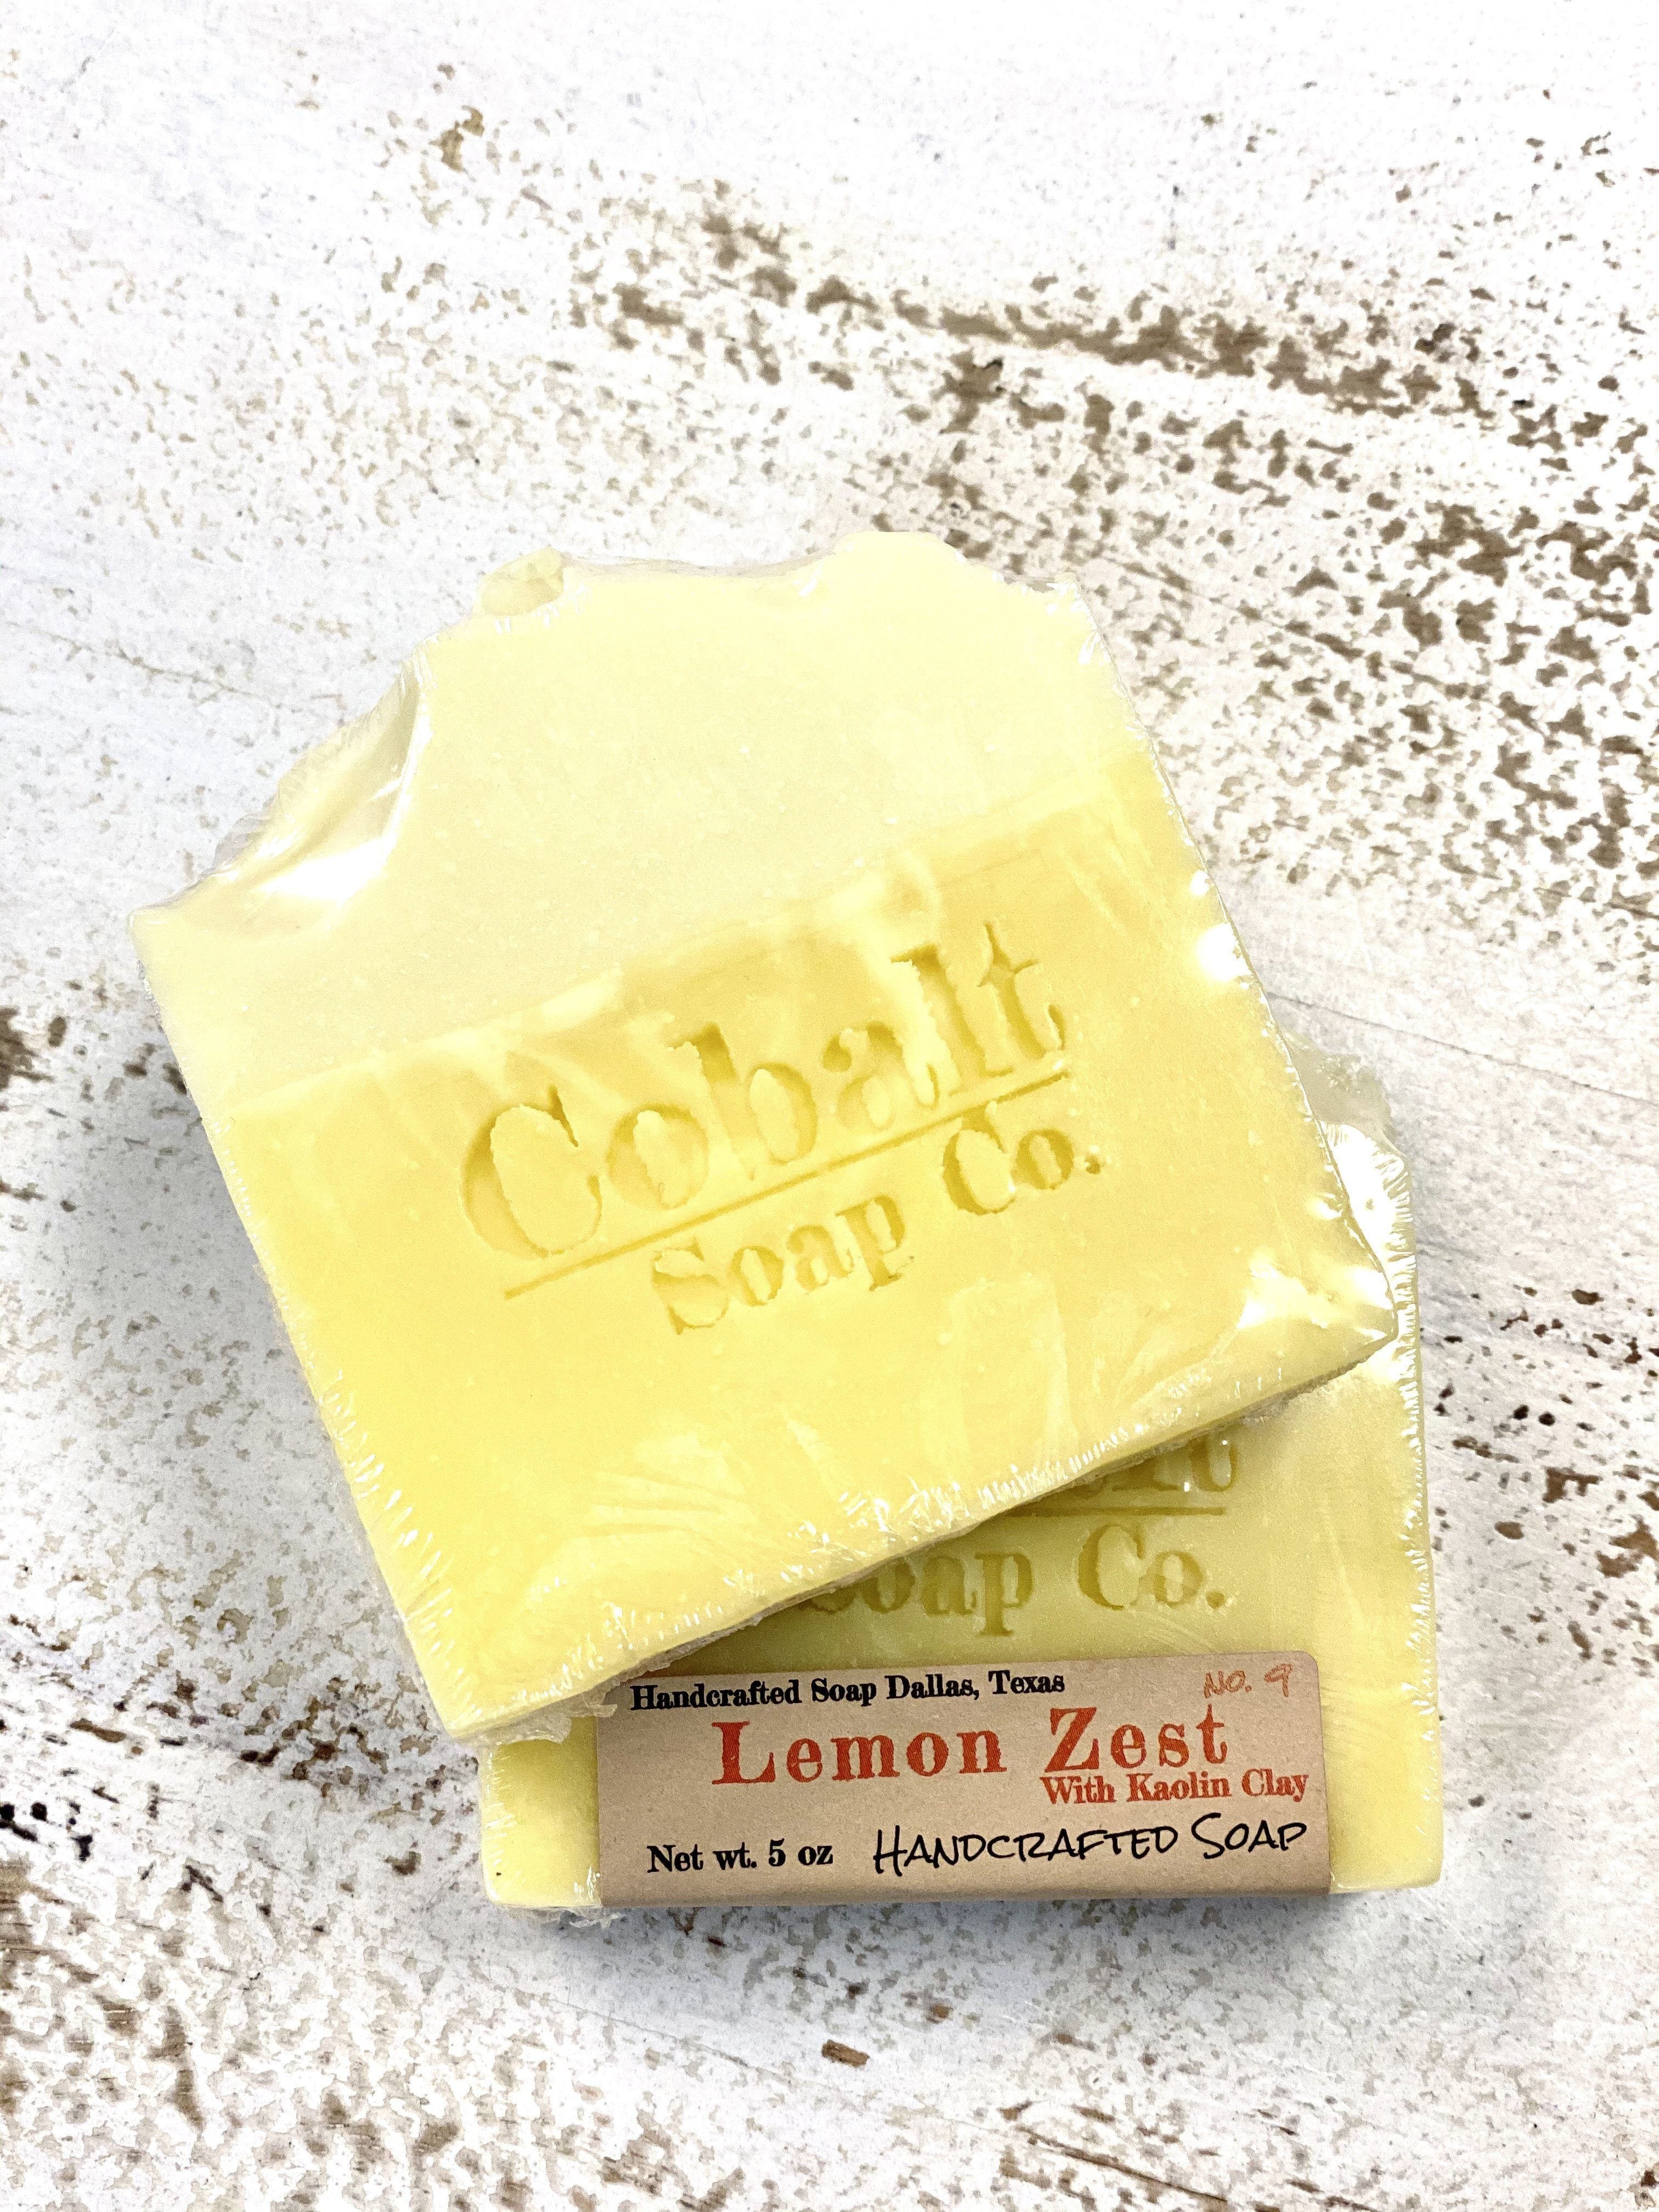 Cobalt Soap no. 4 - Lemon Zest